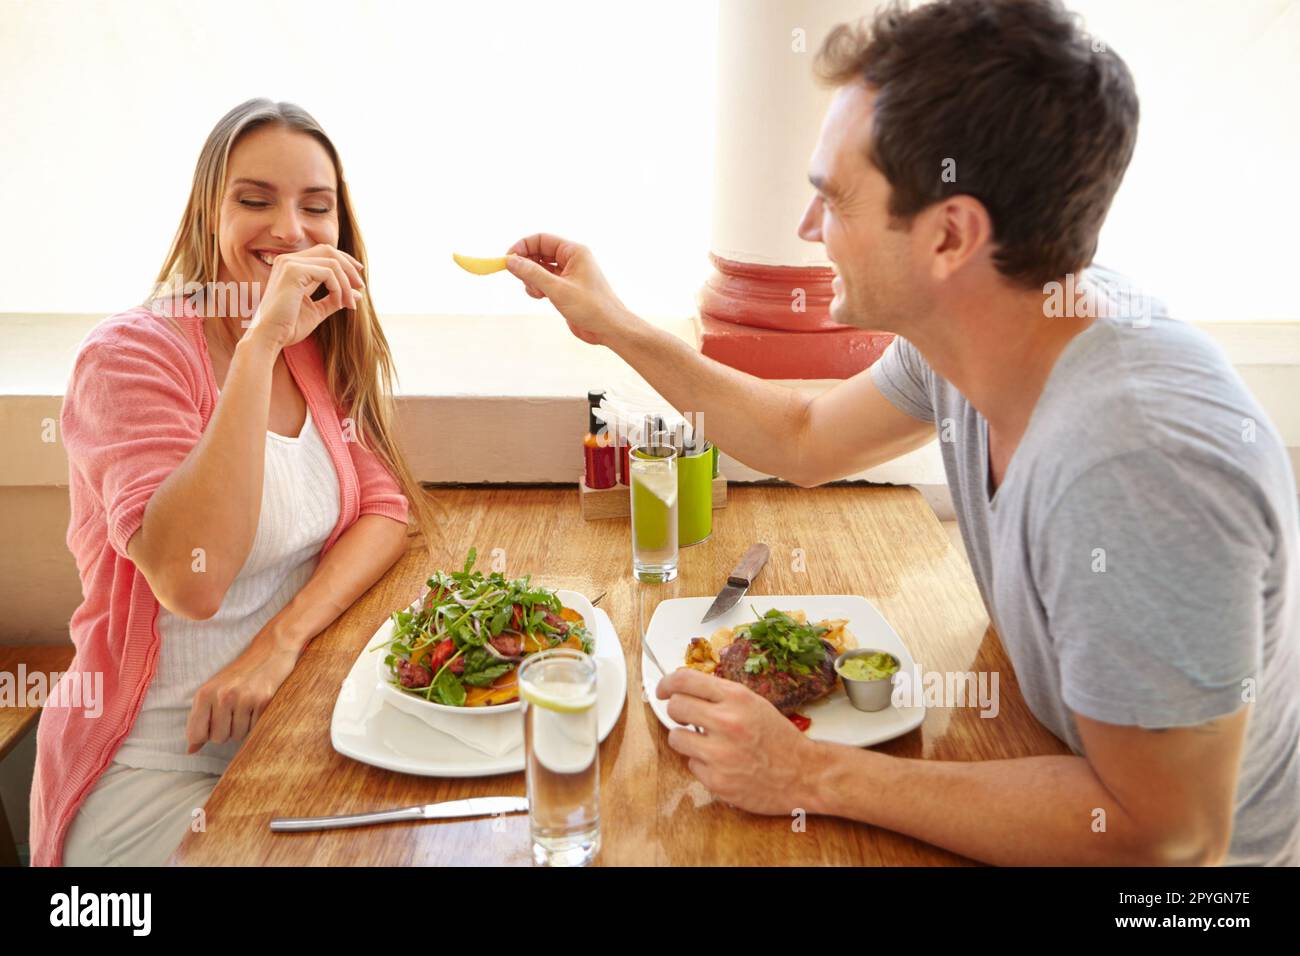 Sie mit einem Chip in Versuchung zu führen. Ein hübscher junger Mann, der lacht, während ihr Freund ihr sein Essen in einem Restaurant anbietet. Stockfoto